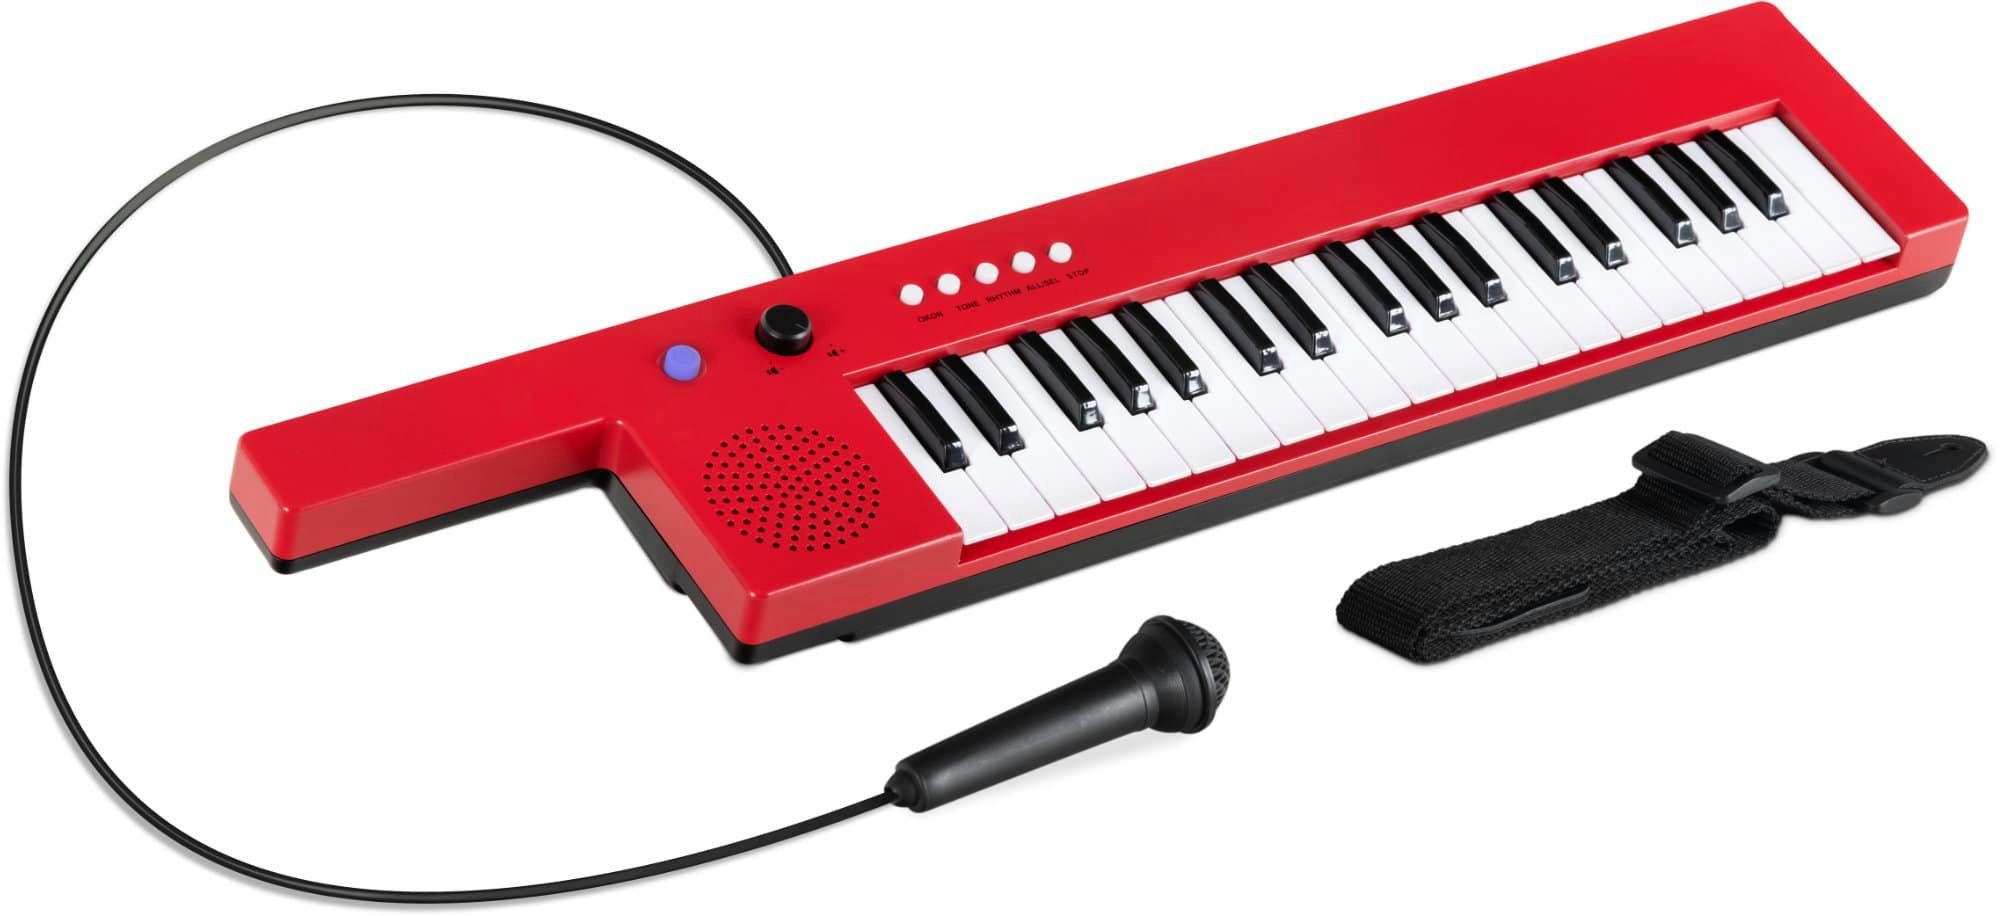 McGrey Spielzeug-Musikinstrument KT-3712 Kinder-Keyboard mit 37 Tasten - inkl. Mikrofon & Tragegurt, mit 4 Klangfarben, 4 Begleitrhythmen - 10 Demosongs & Aufnahmefunktion